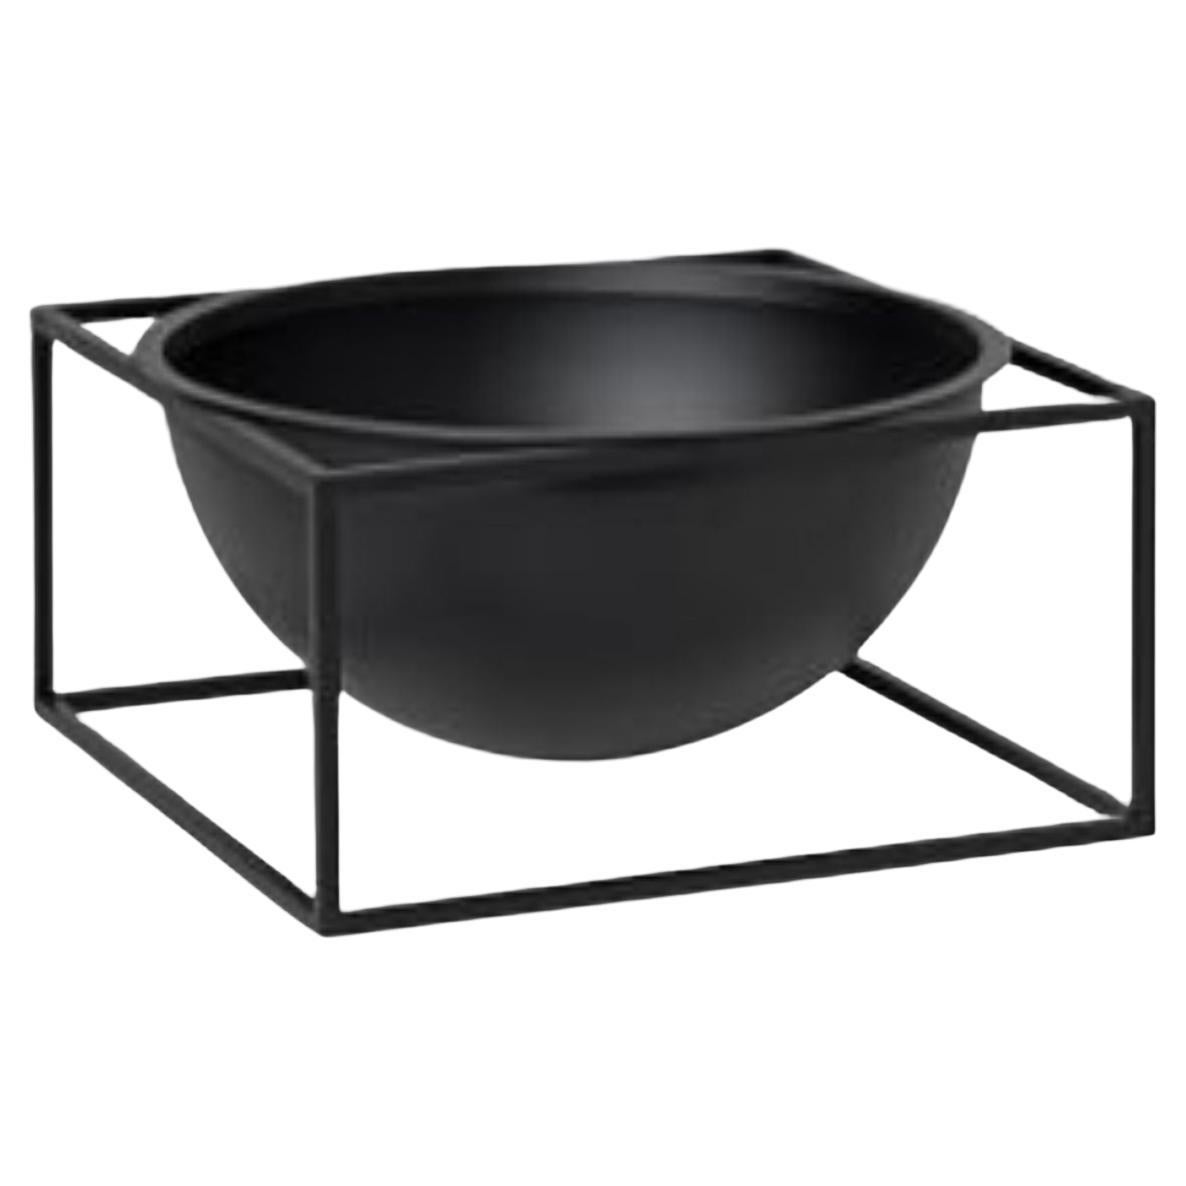 Black Large Centerpiece Kubus Bowl by Lassen For Sale